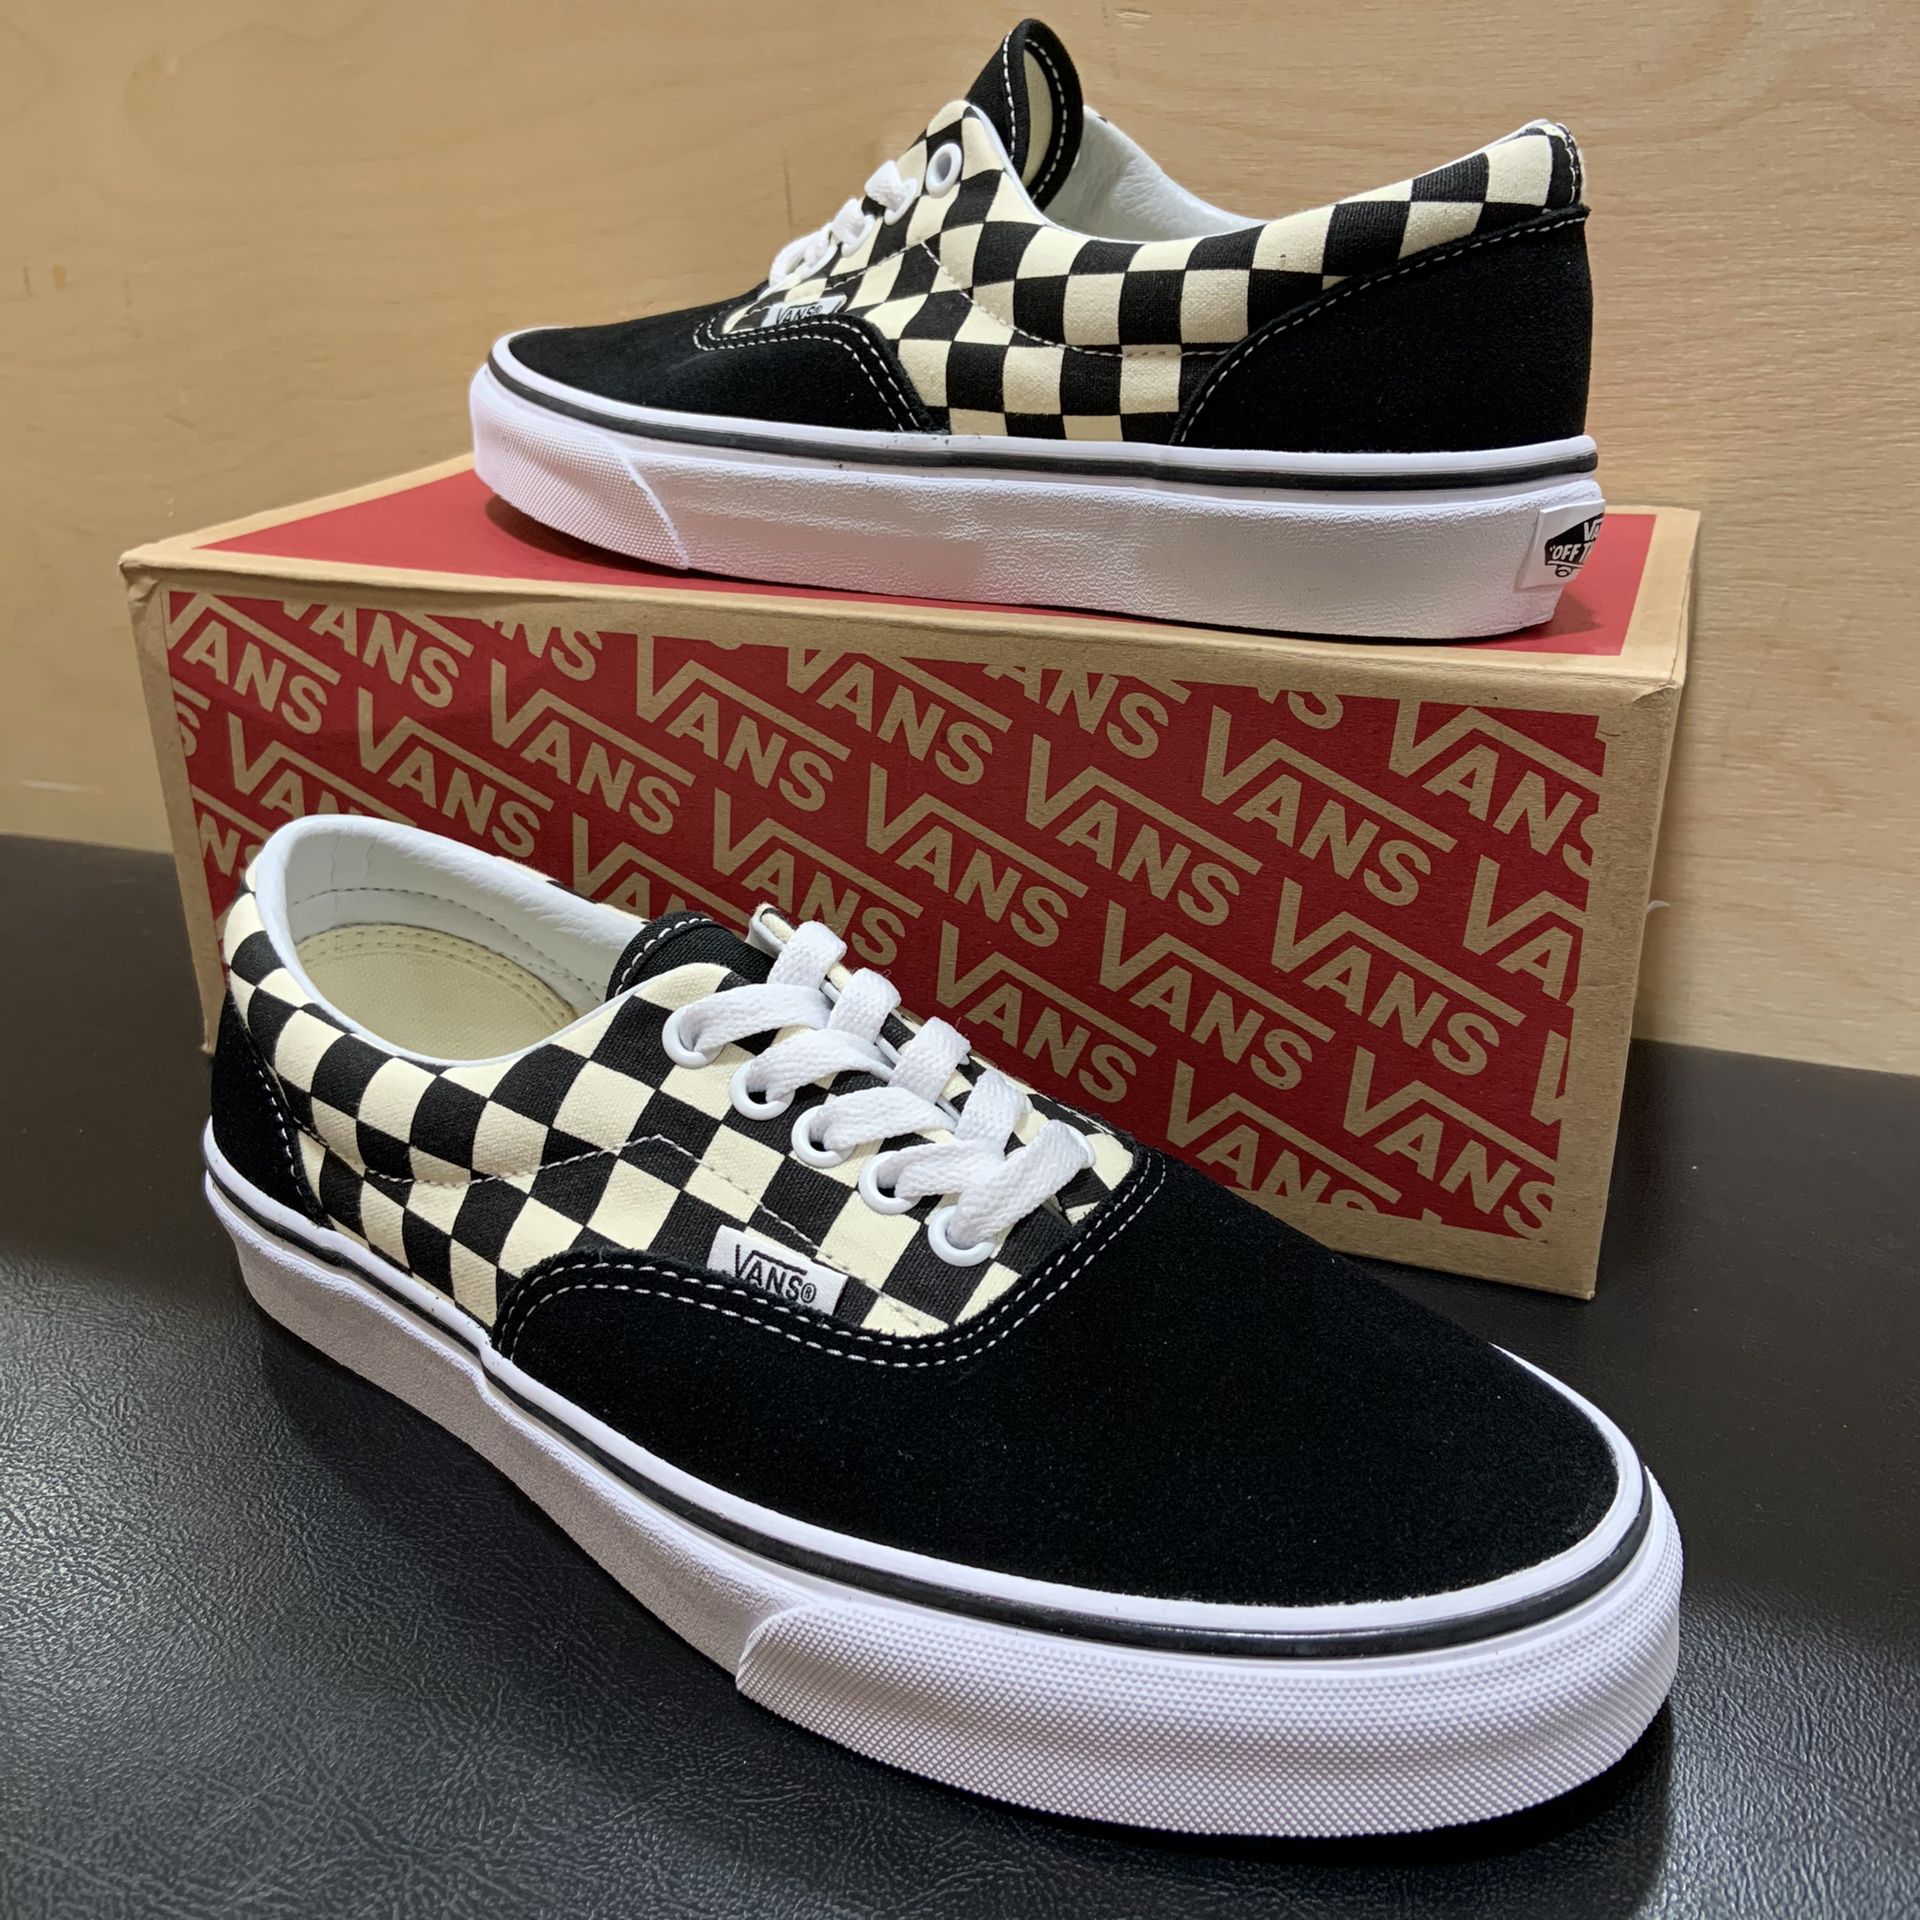 Vans Era Shoe Black/White Checkered Brand New Sizes 7, 8, 9, 9.5, 10.5, 11, 12, or 13 skate skateboarding